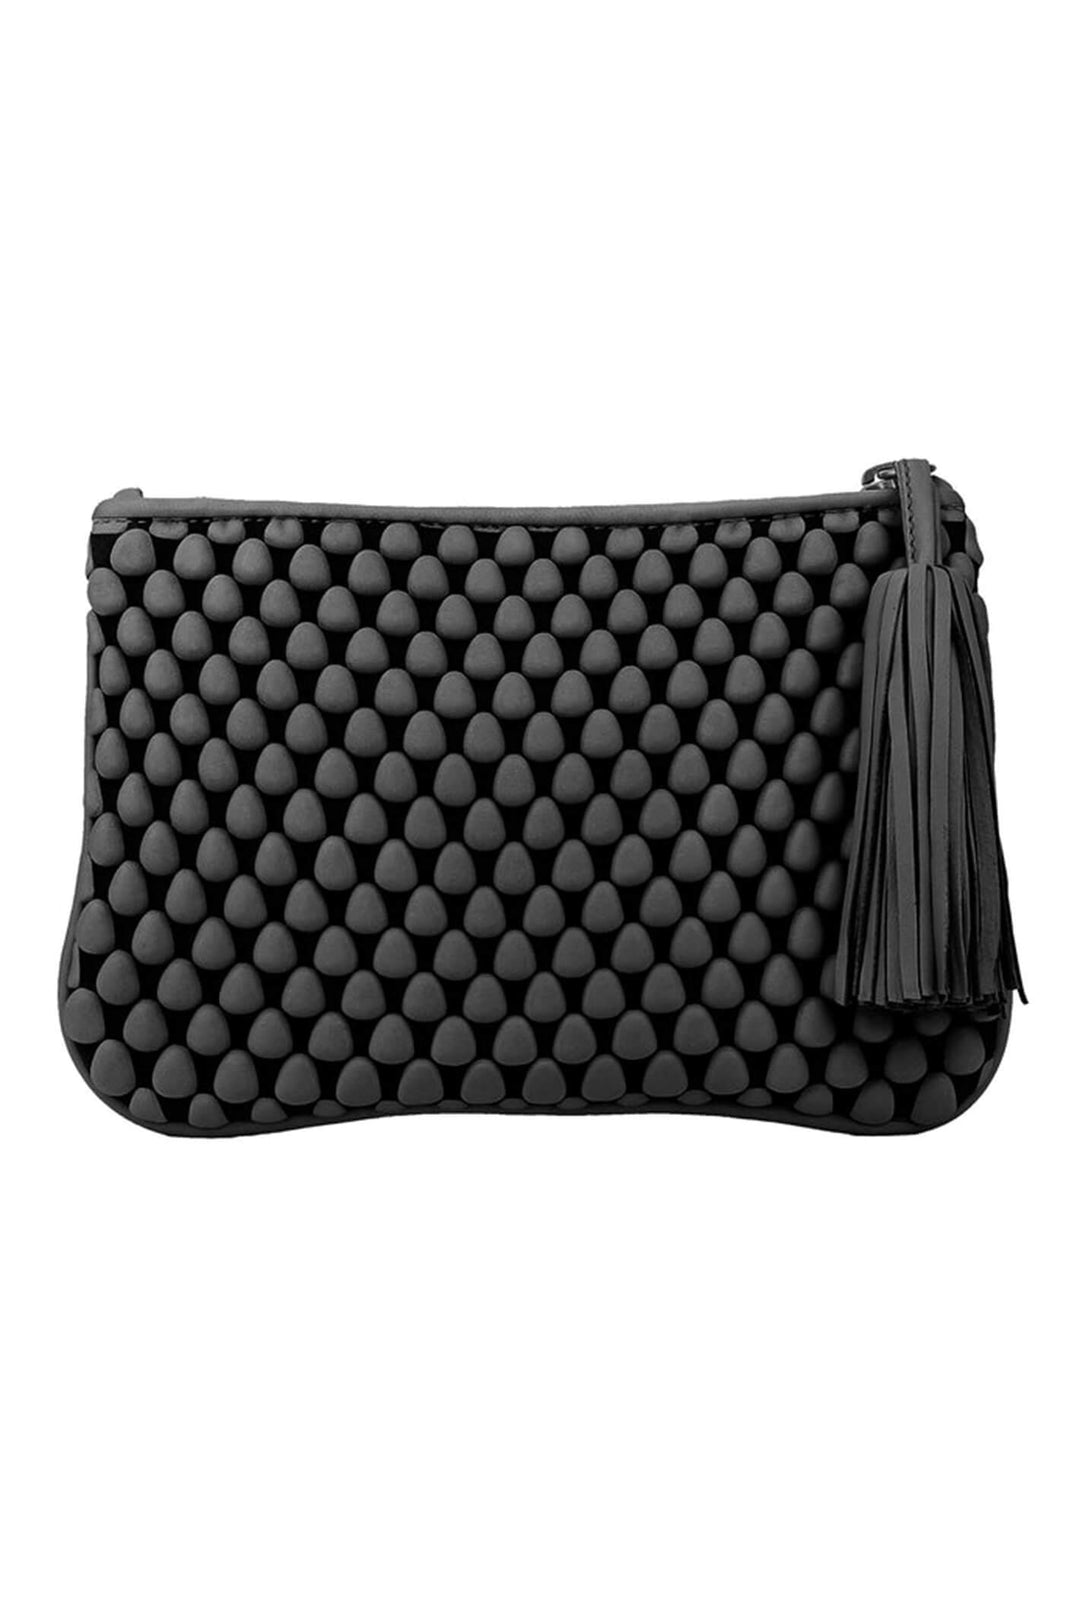 Tissa Fontaneda H08L Pochette Large Black Nappa Leather Bubble Bag - Olivia Grace Fashion